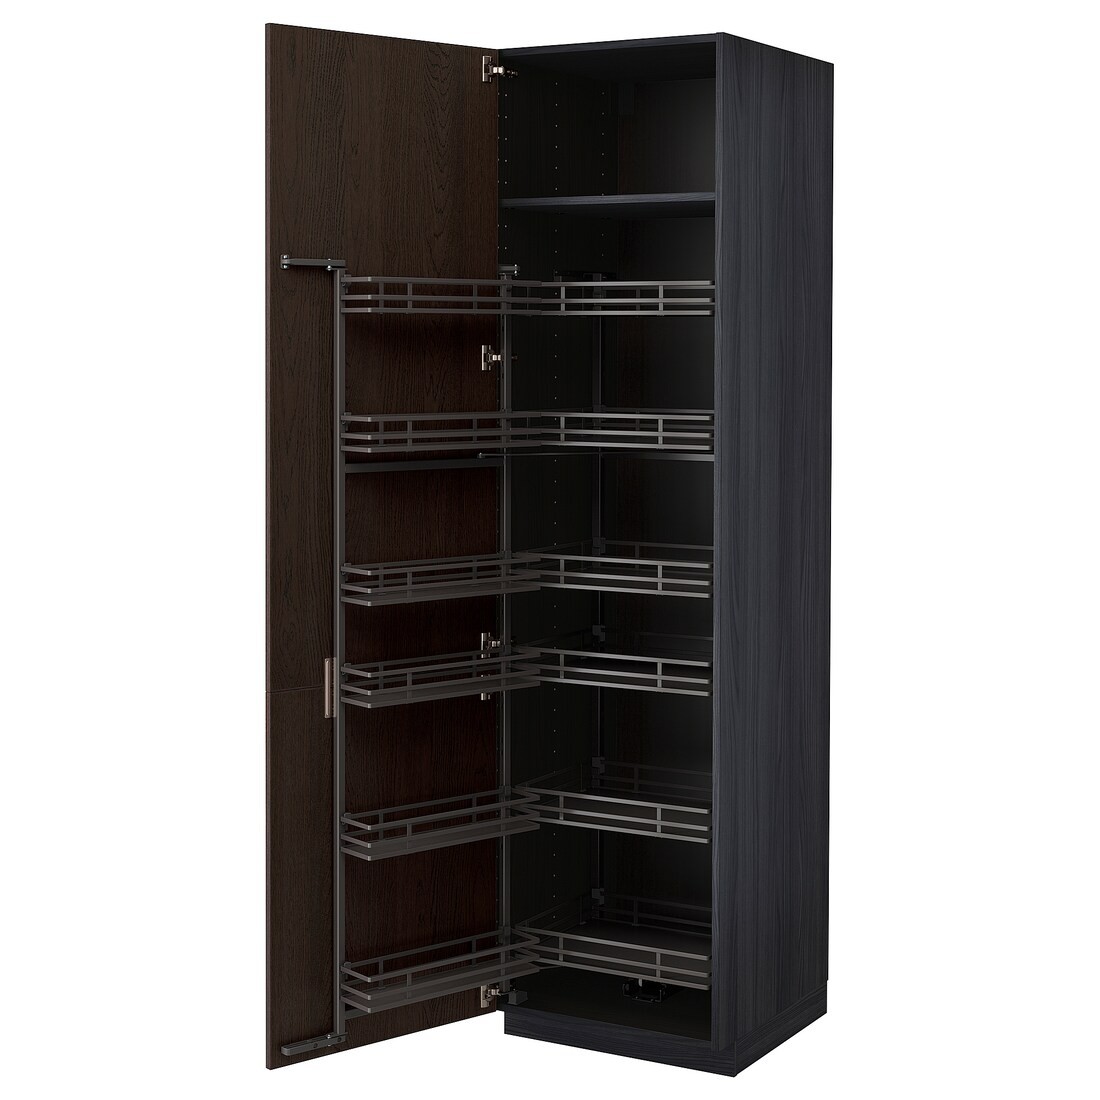 METOD МЕТОД Высокий шкаф с выдвижной кладовой, черный / Sinarp коричневый, 60x60x220 см